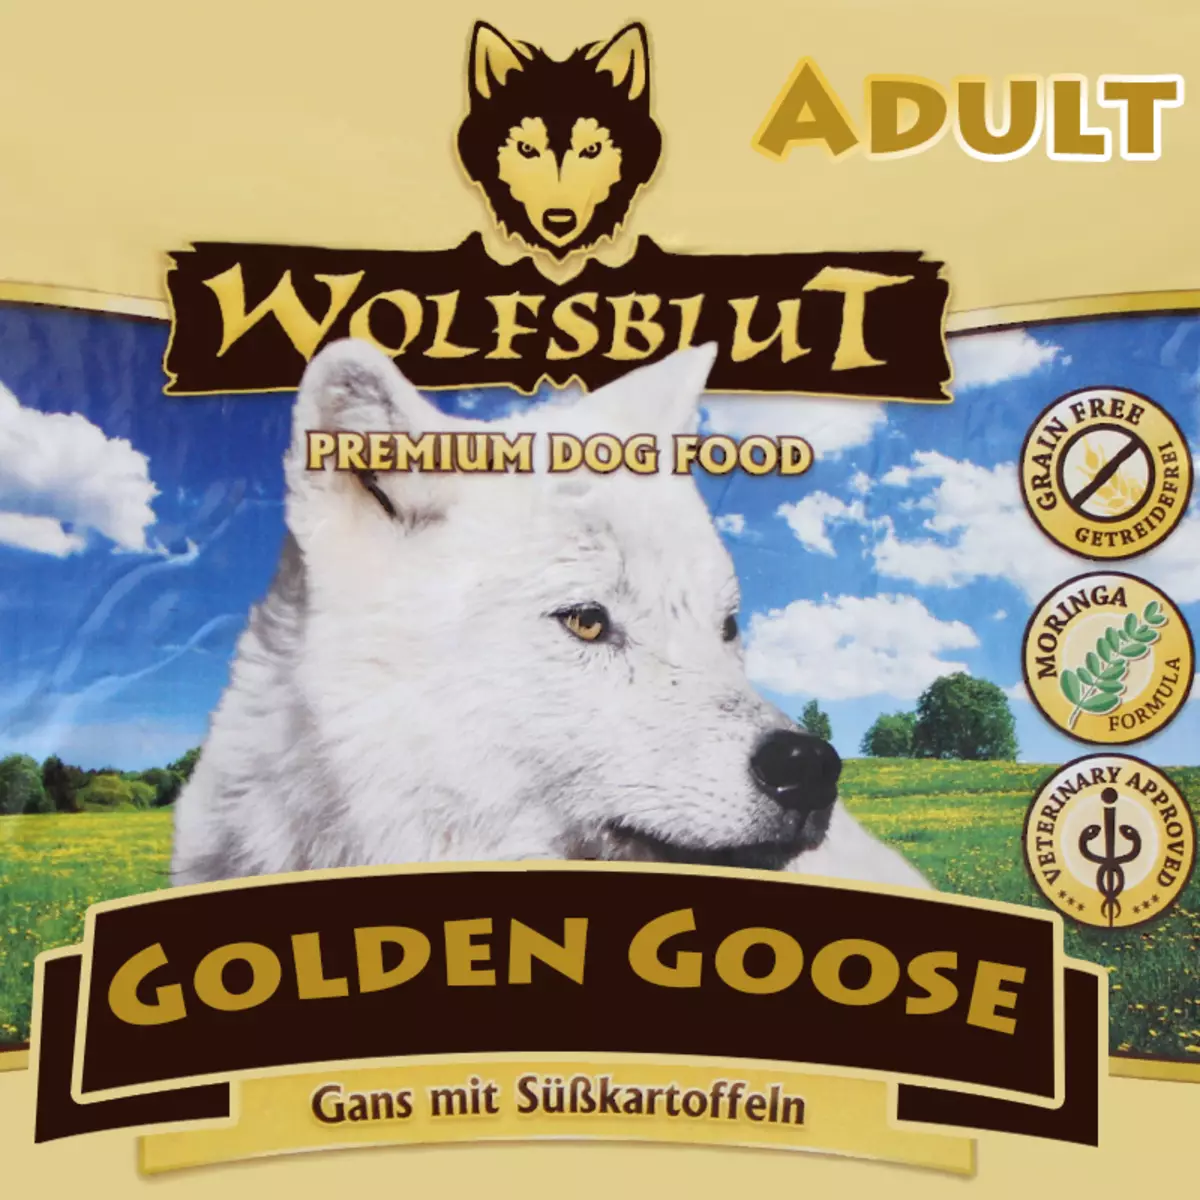 WolfSblut إطعام الكلب: للكلاب والكلاب الكبار، وتكوين الأعلاف الجافة الكلب مع الذئب على العبوة. الغذاء للكلاب الصغيرة والمتوسطة والسلالات كبيرة. تقييم 22014_28